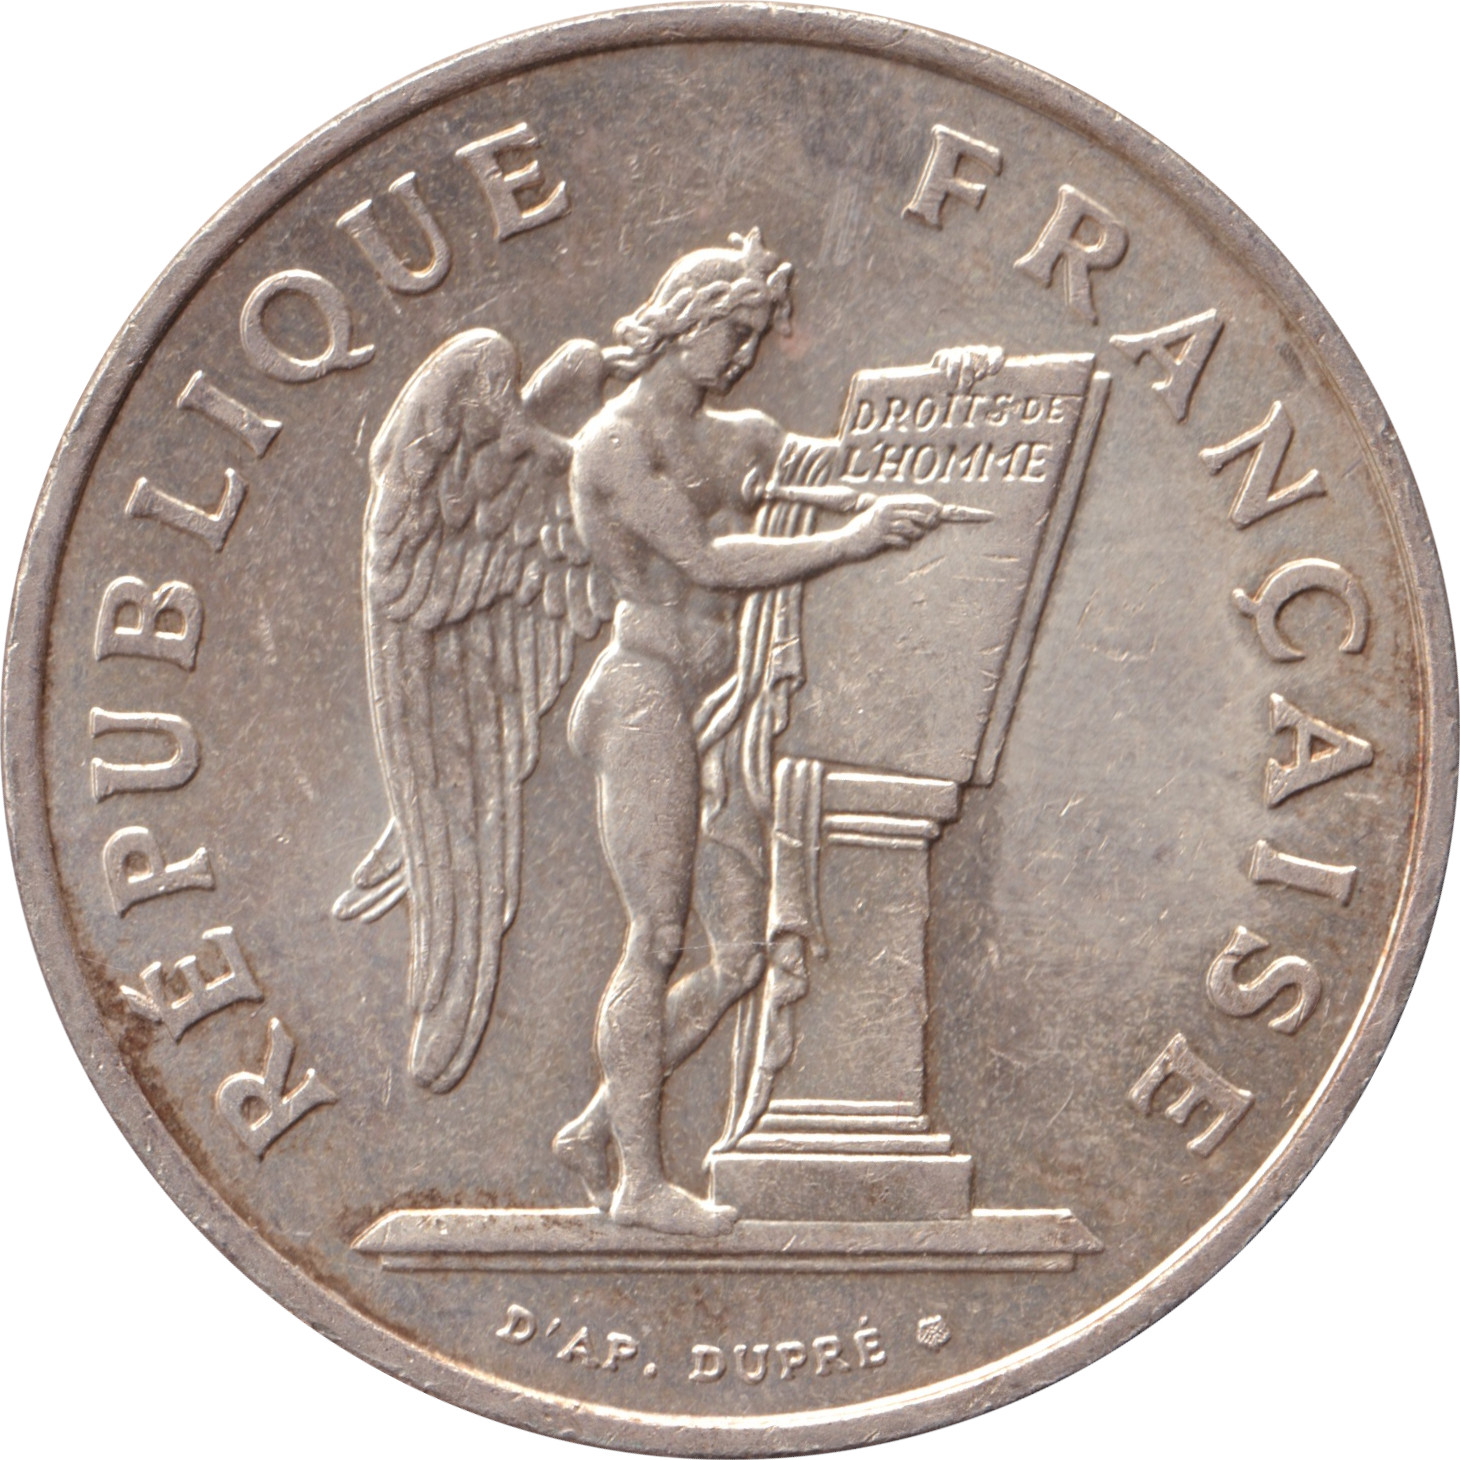 100 francs - Droit de l'homme